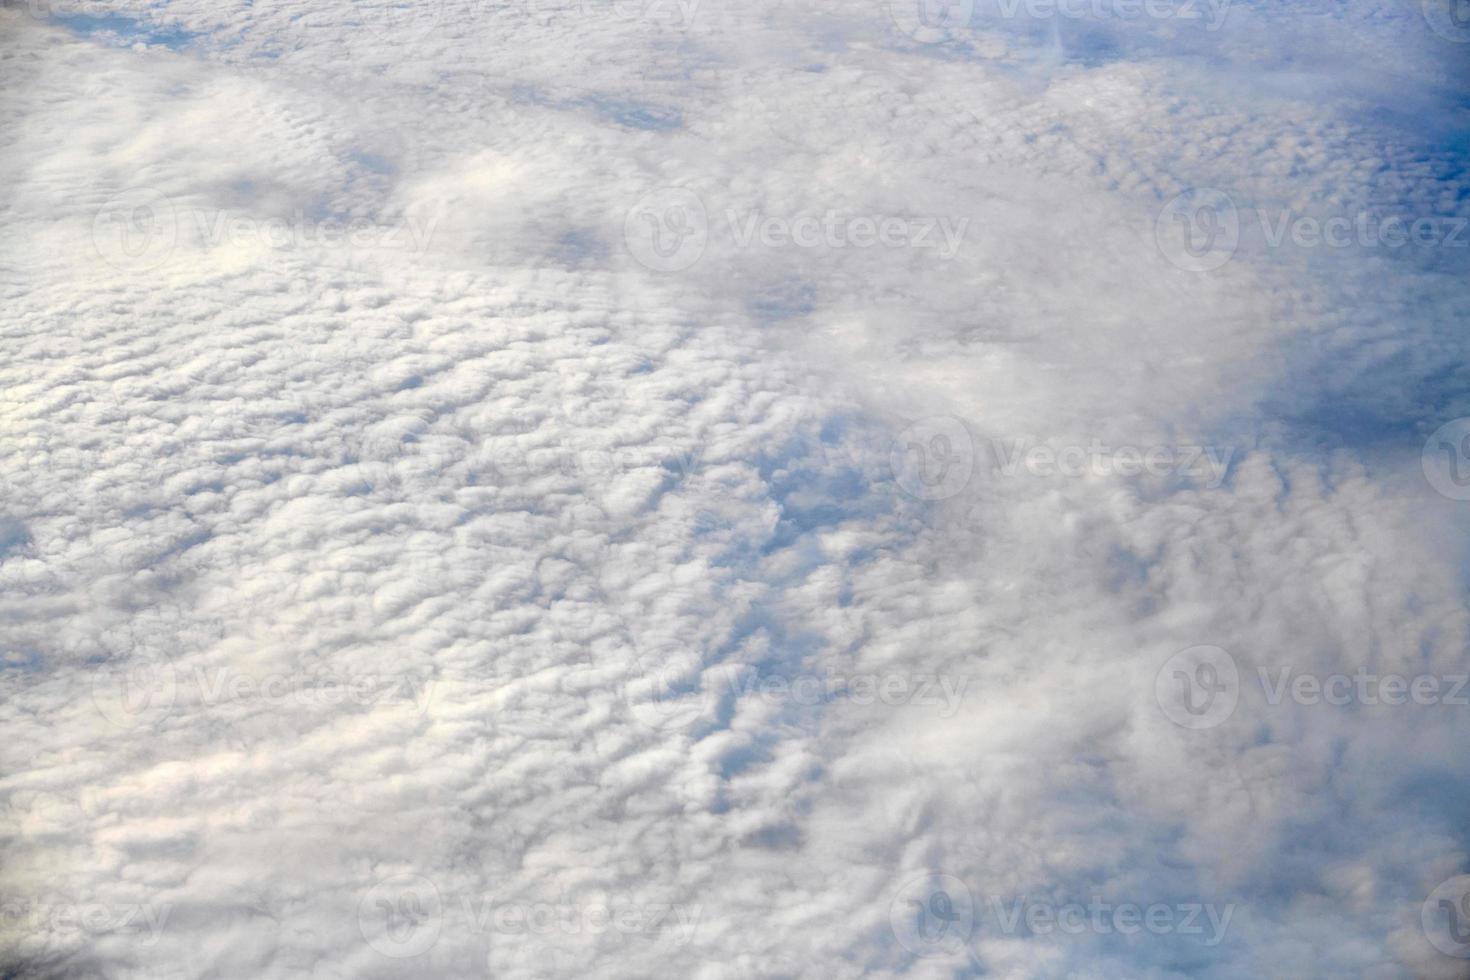 vista de tirar o fôlego sobre nuvens da janela da aeronave, nuvens azuis brancas grossas parecem espuma macia foto